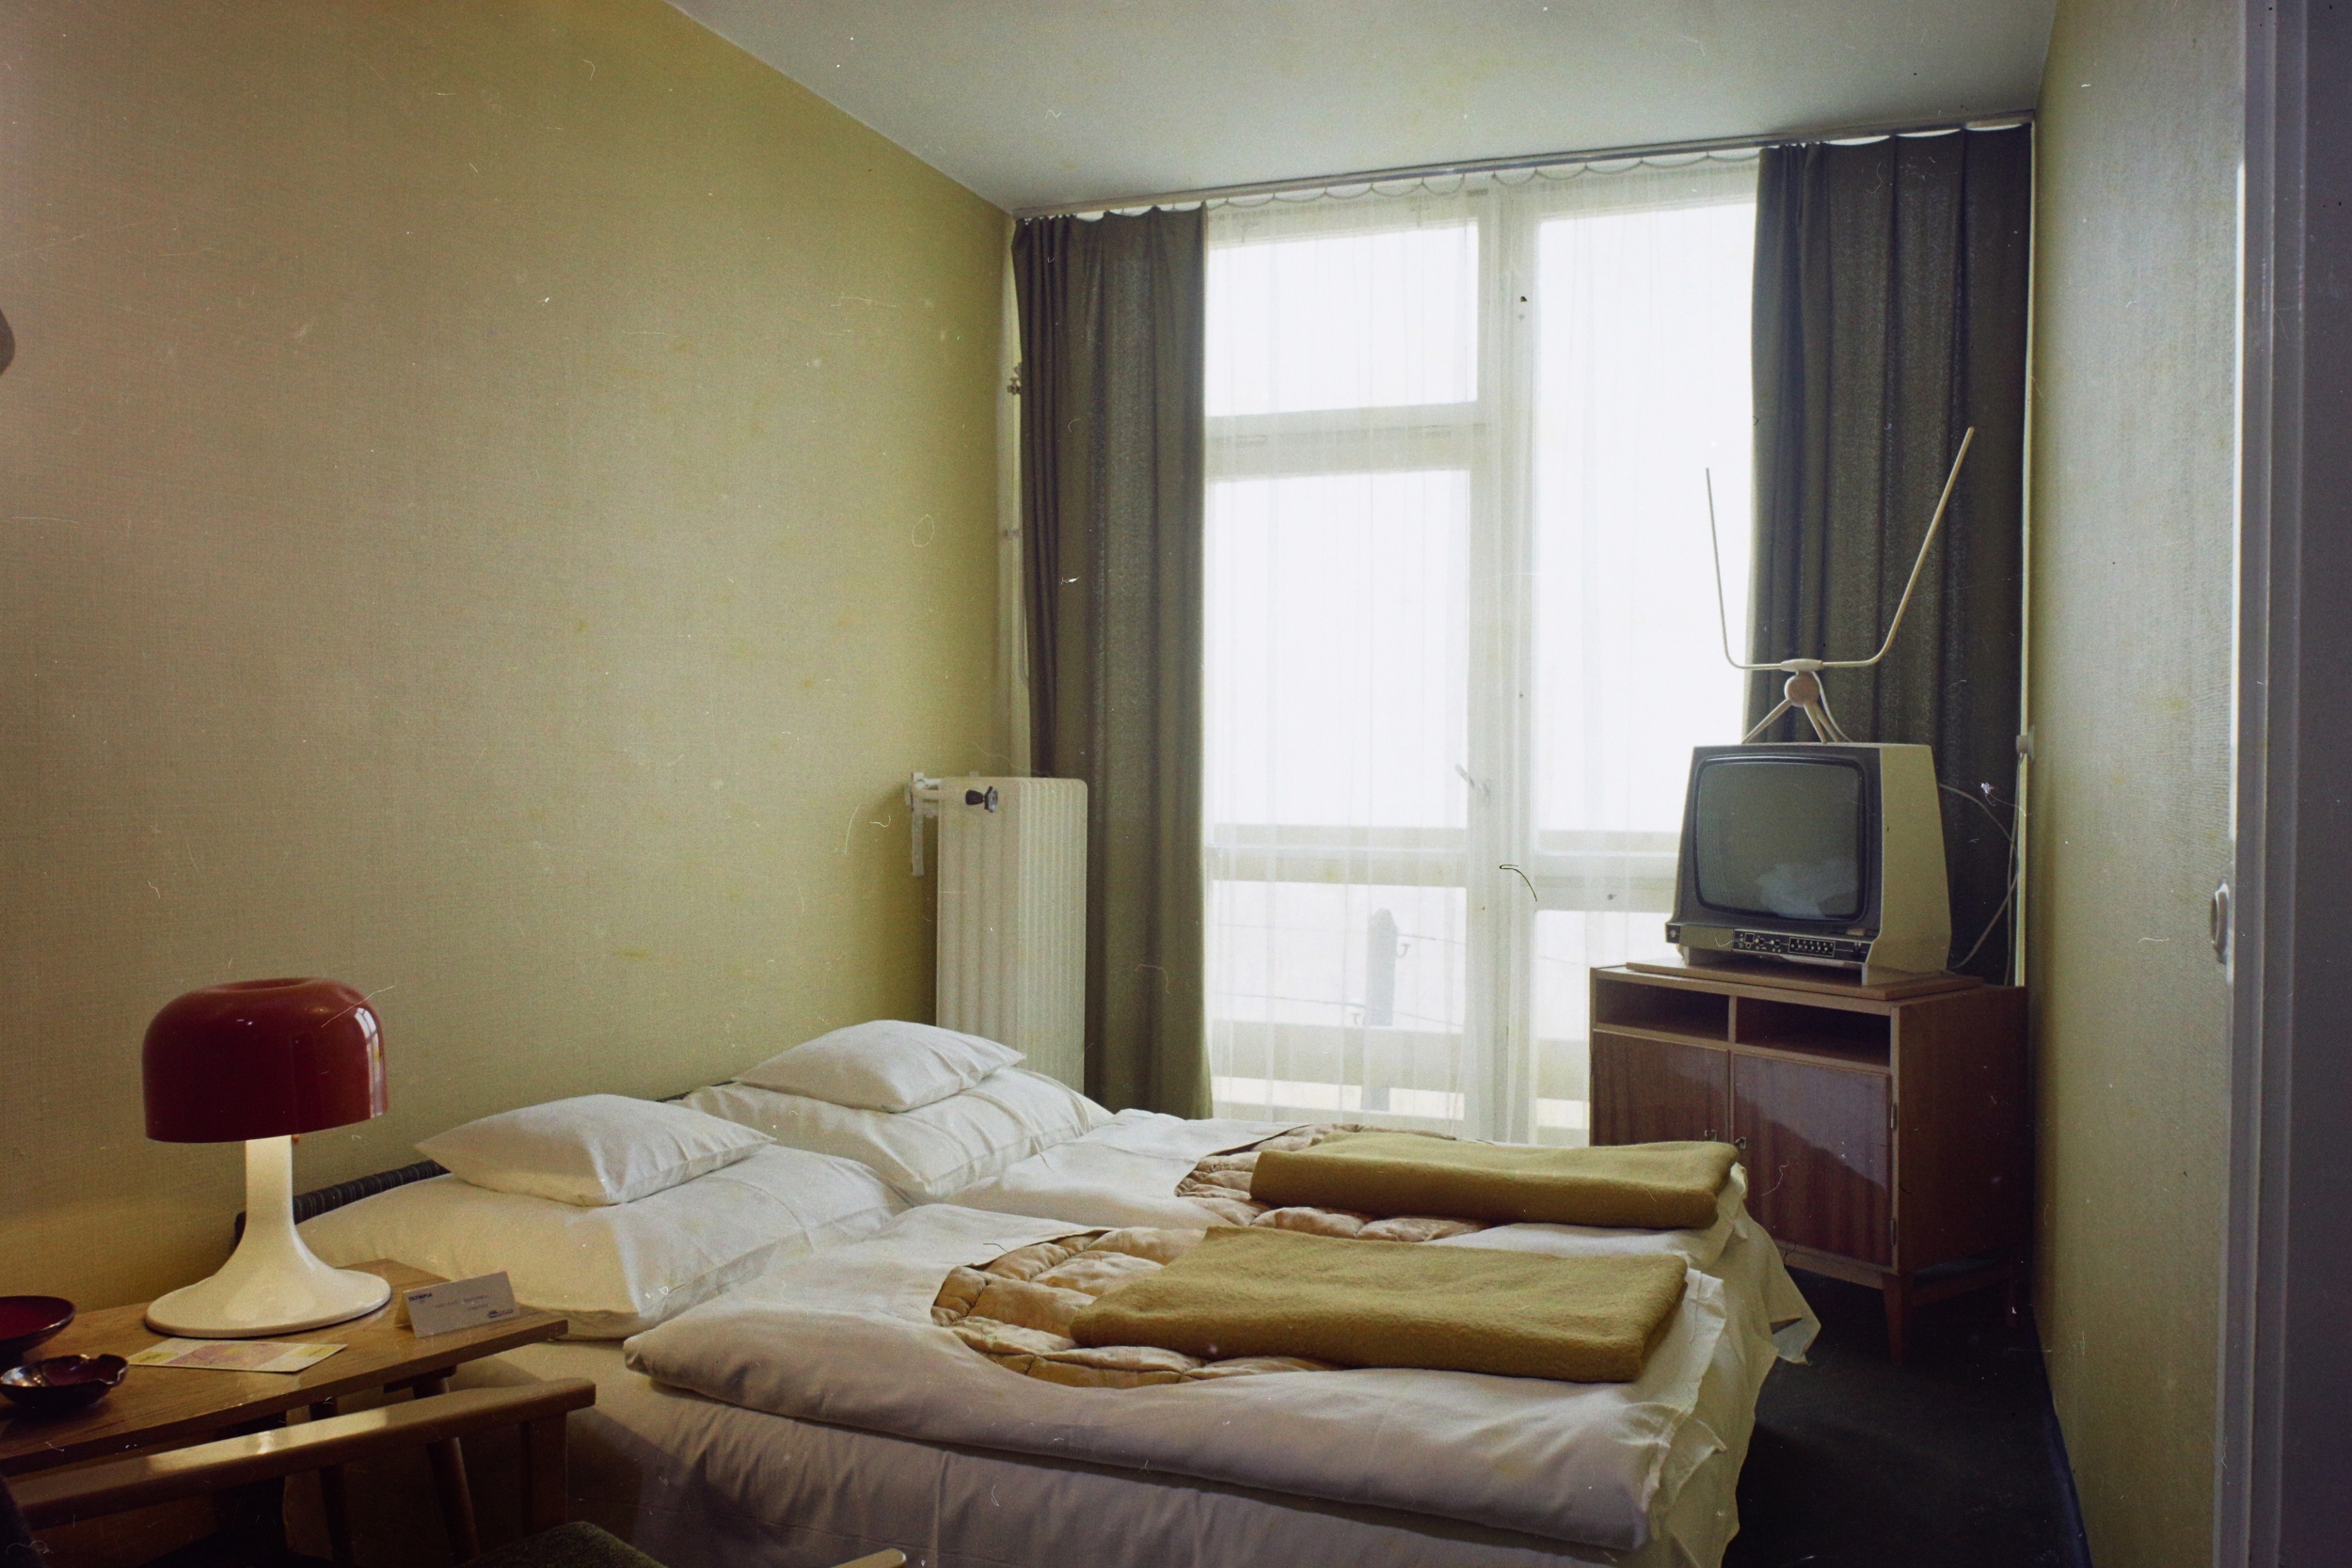 Eötvös út 40., a Hotel Olimpia egyik szobája, 1974. Fotó: Fortepan / Bauer Sándor